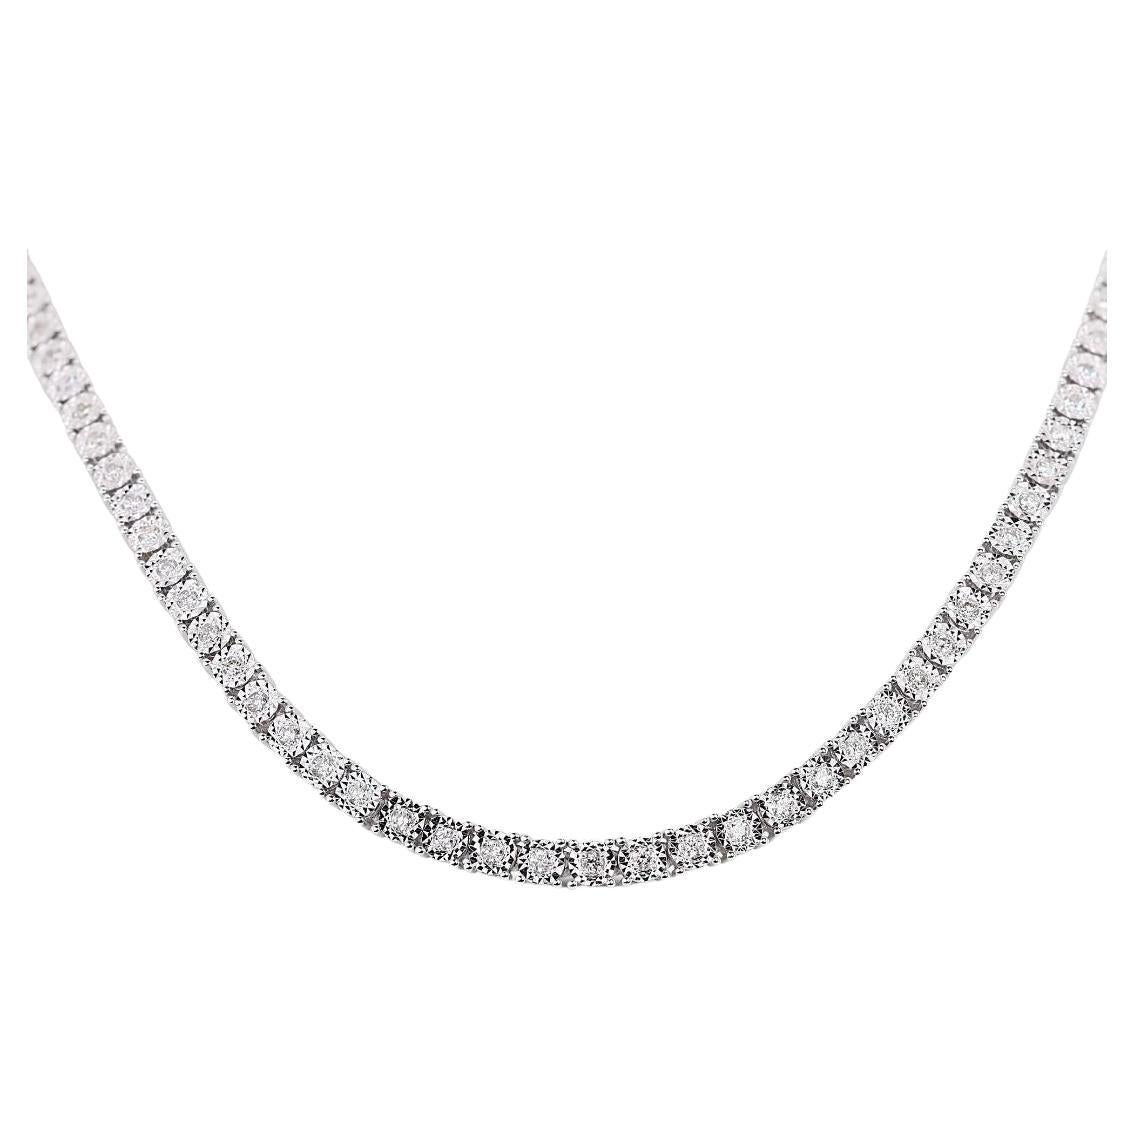 Élégant collier de diamants naturels ronds brillants de 1,74 carat en or blanc 9 carats